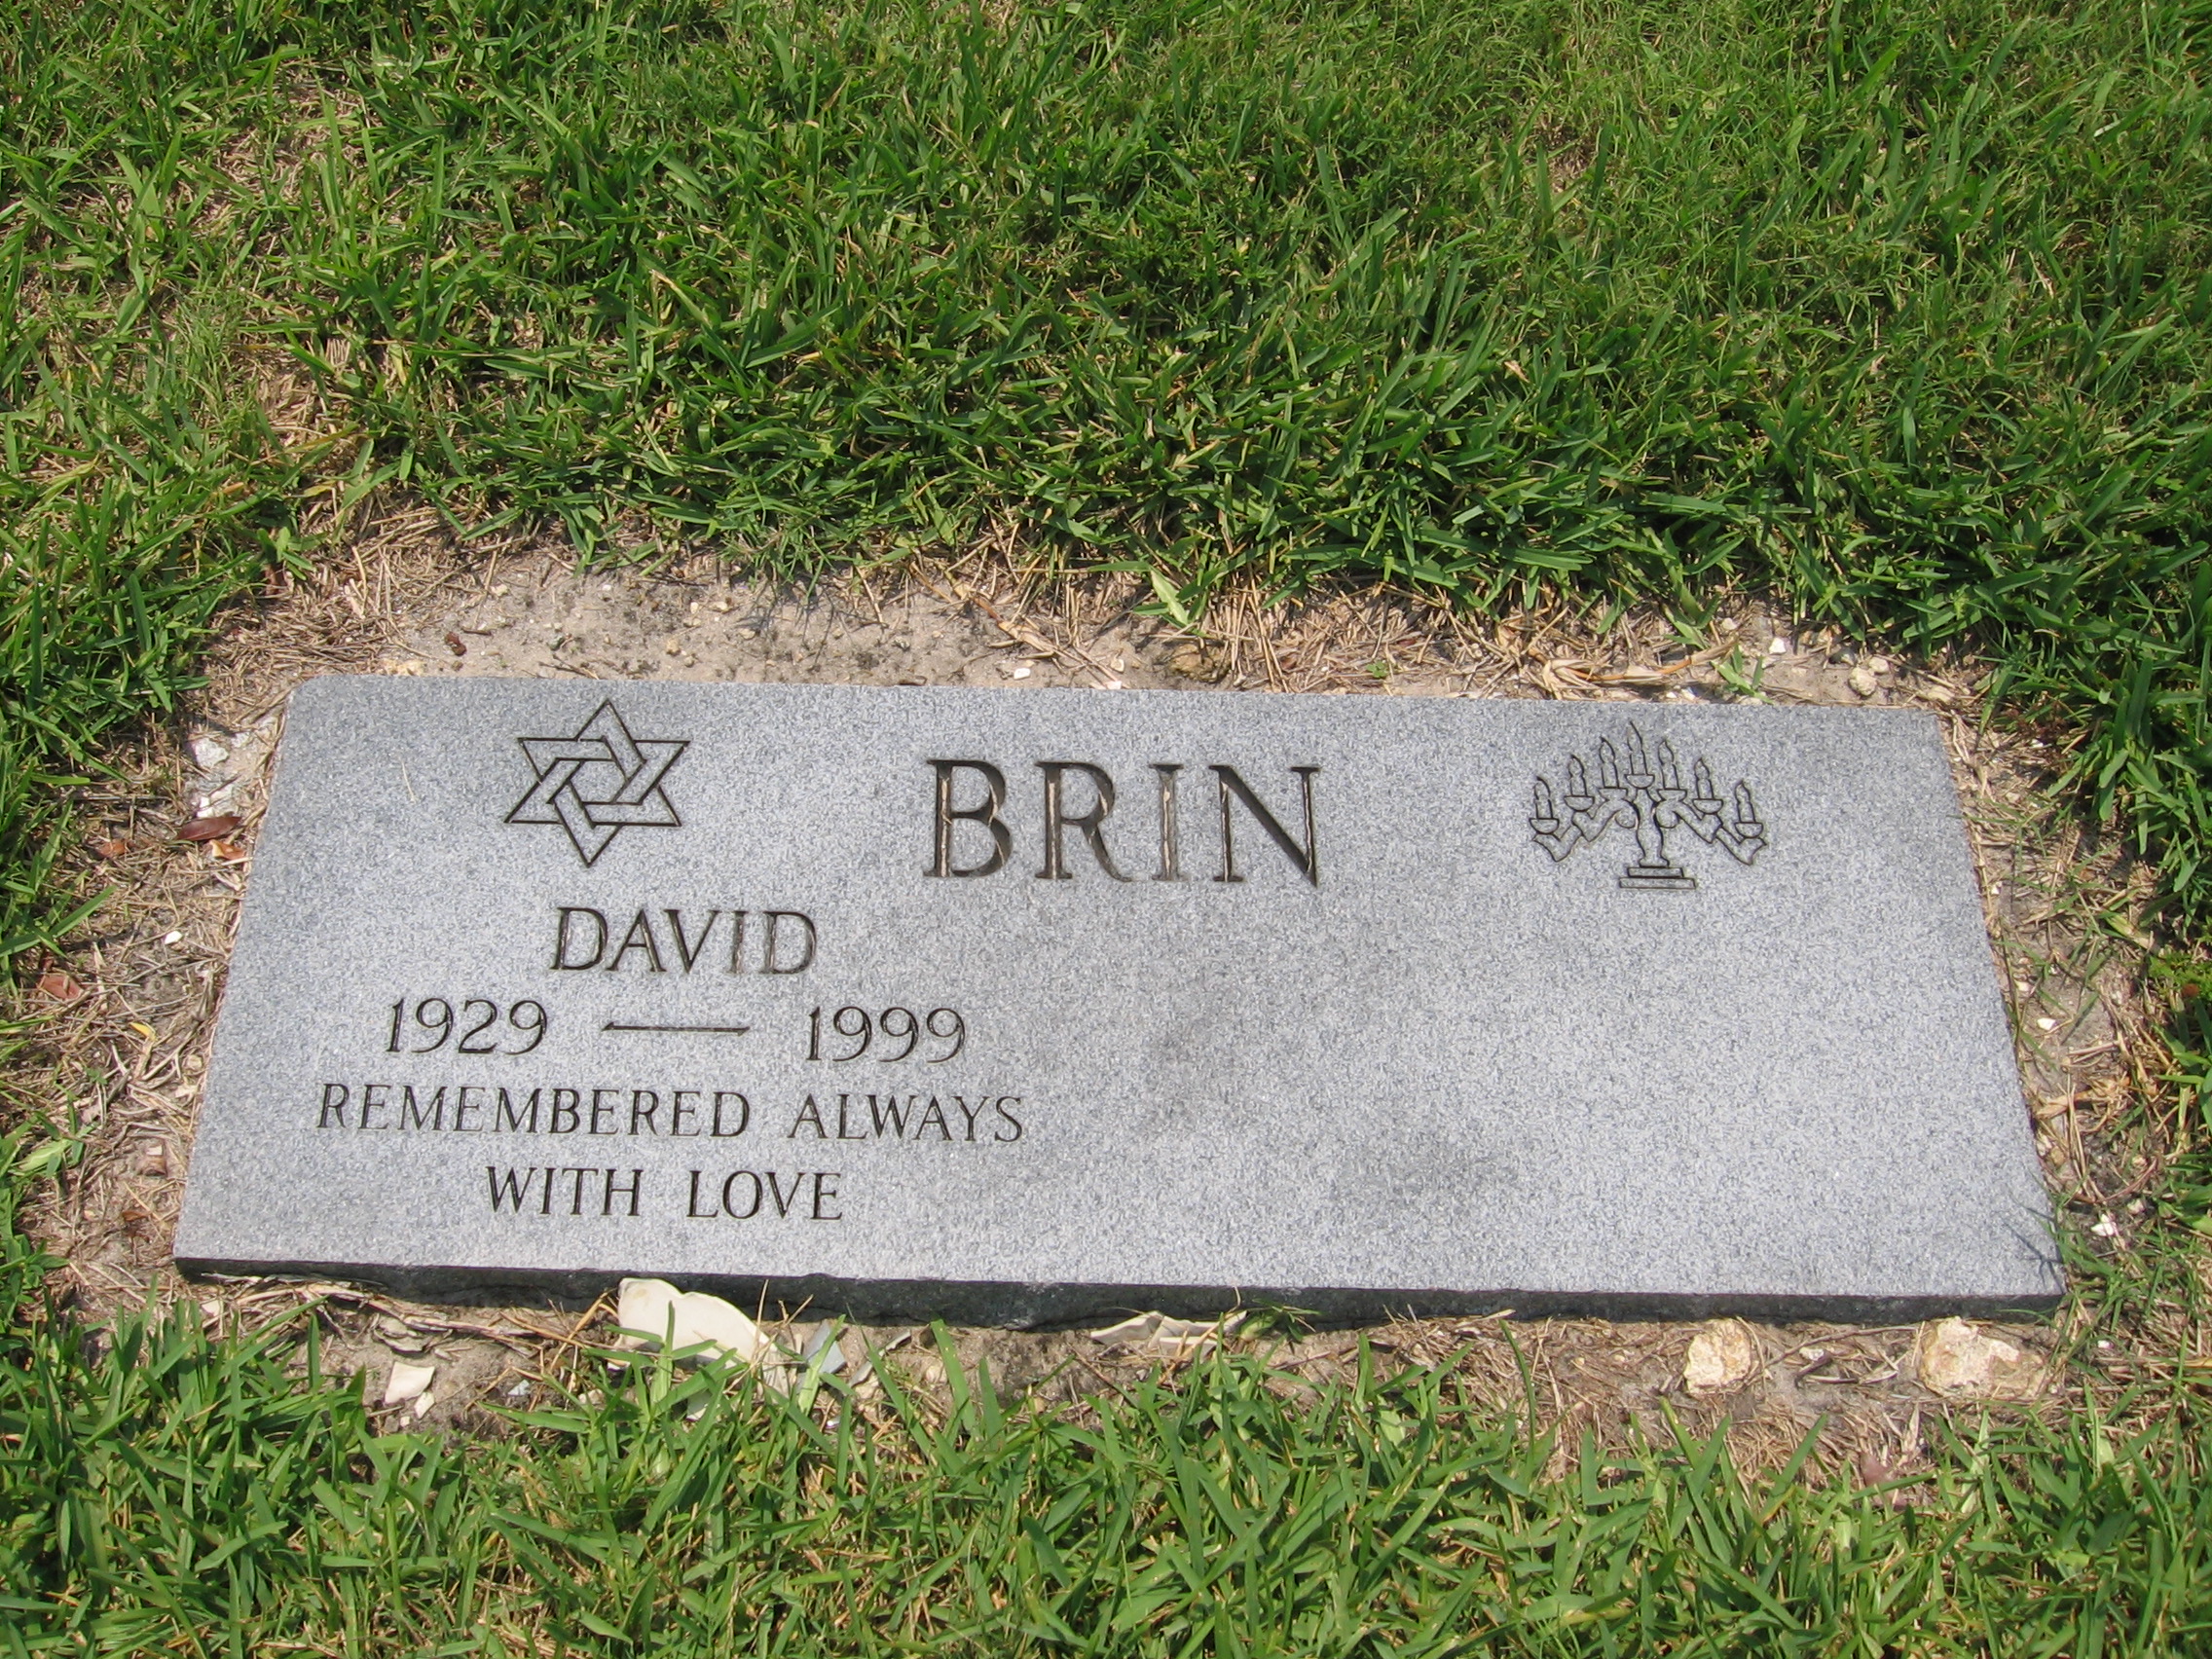 David Brin